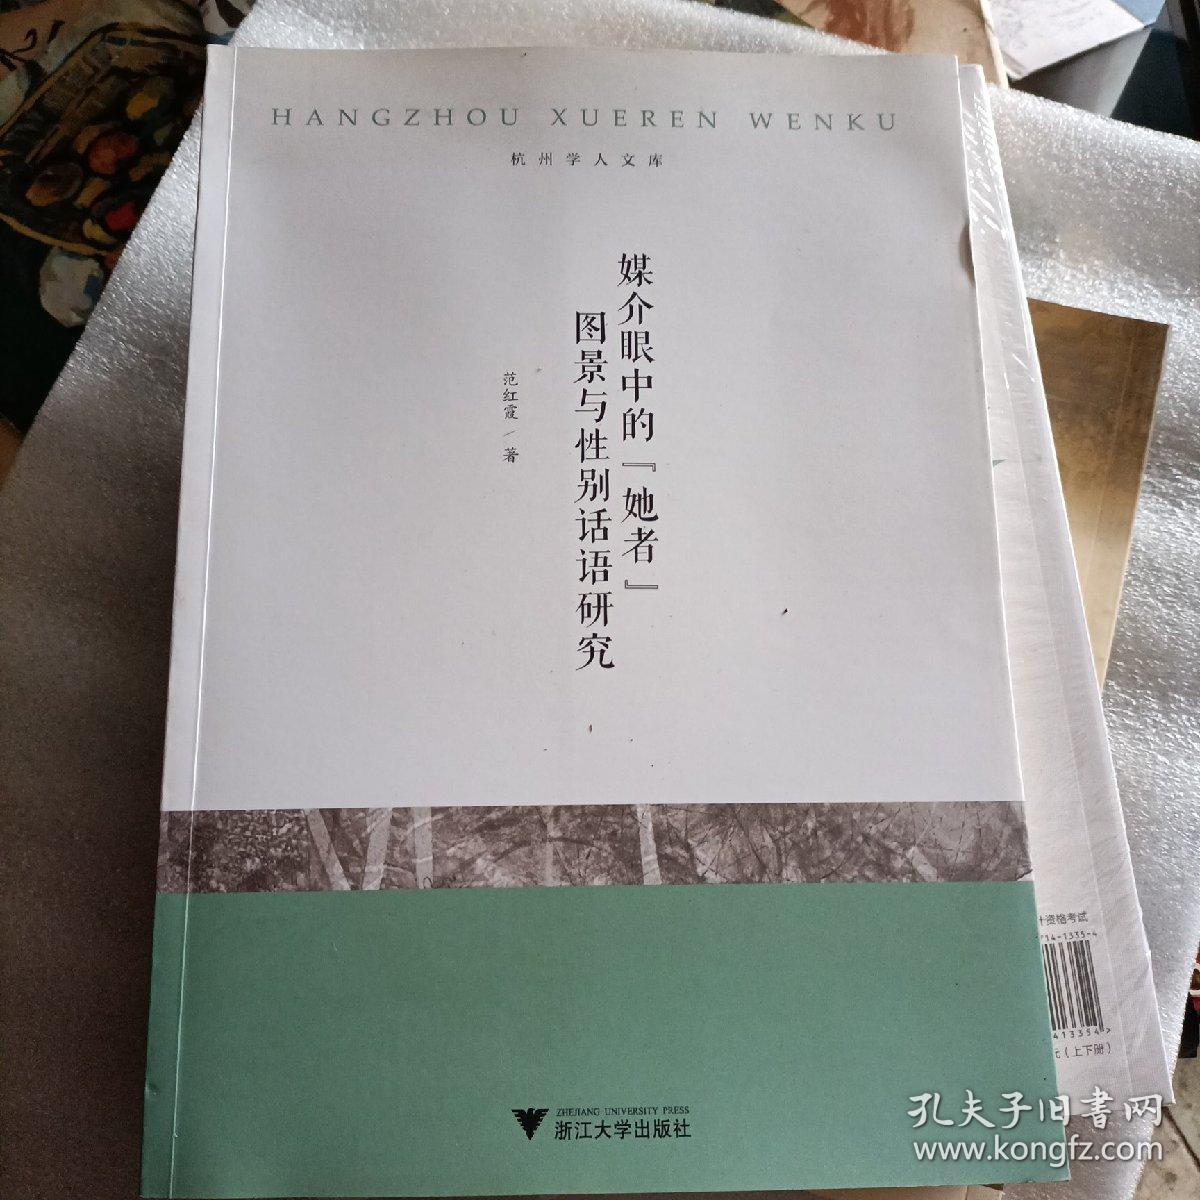 杭州学人文库：媒介眼中的“她者”图景与性别话语研究